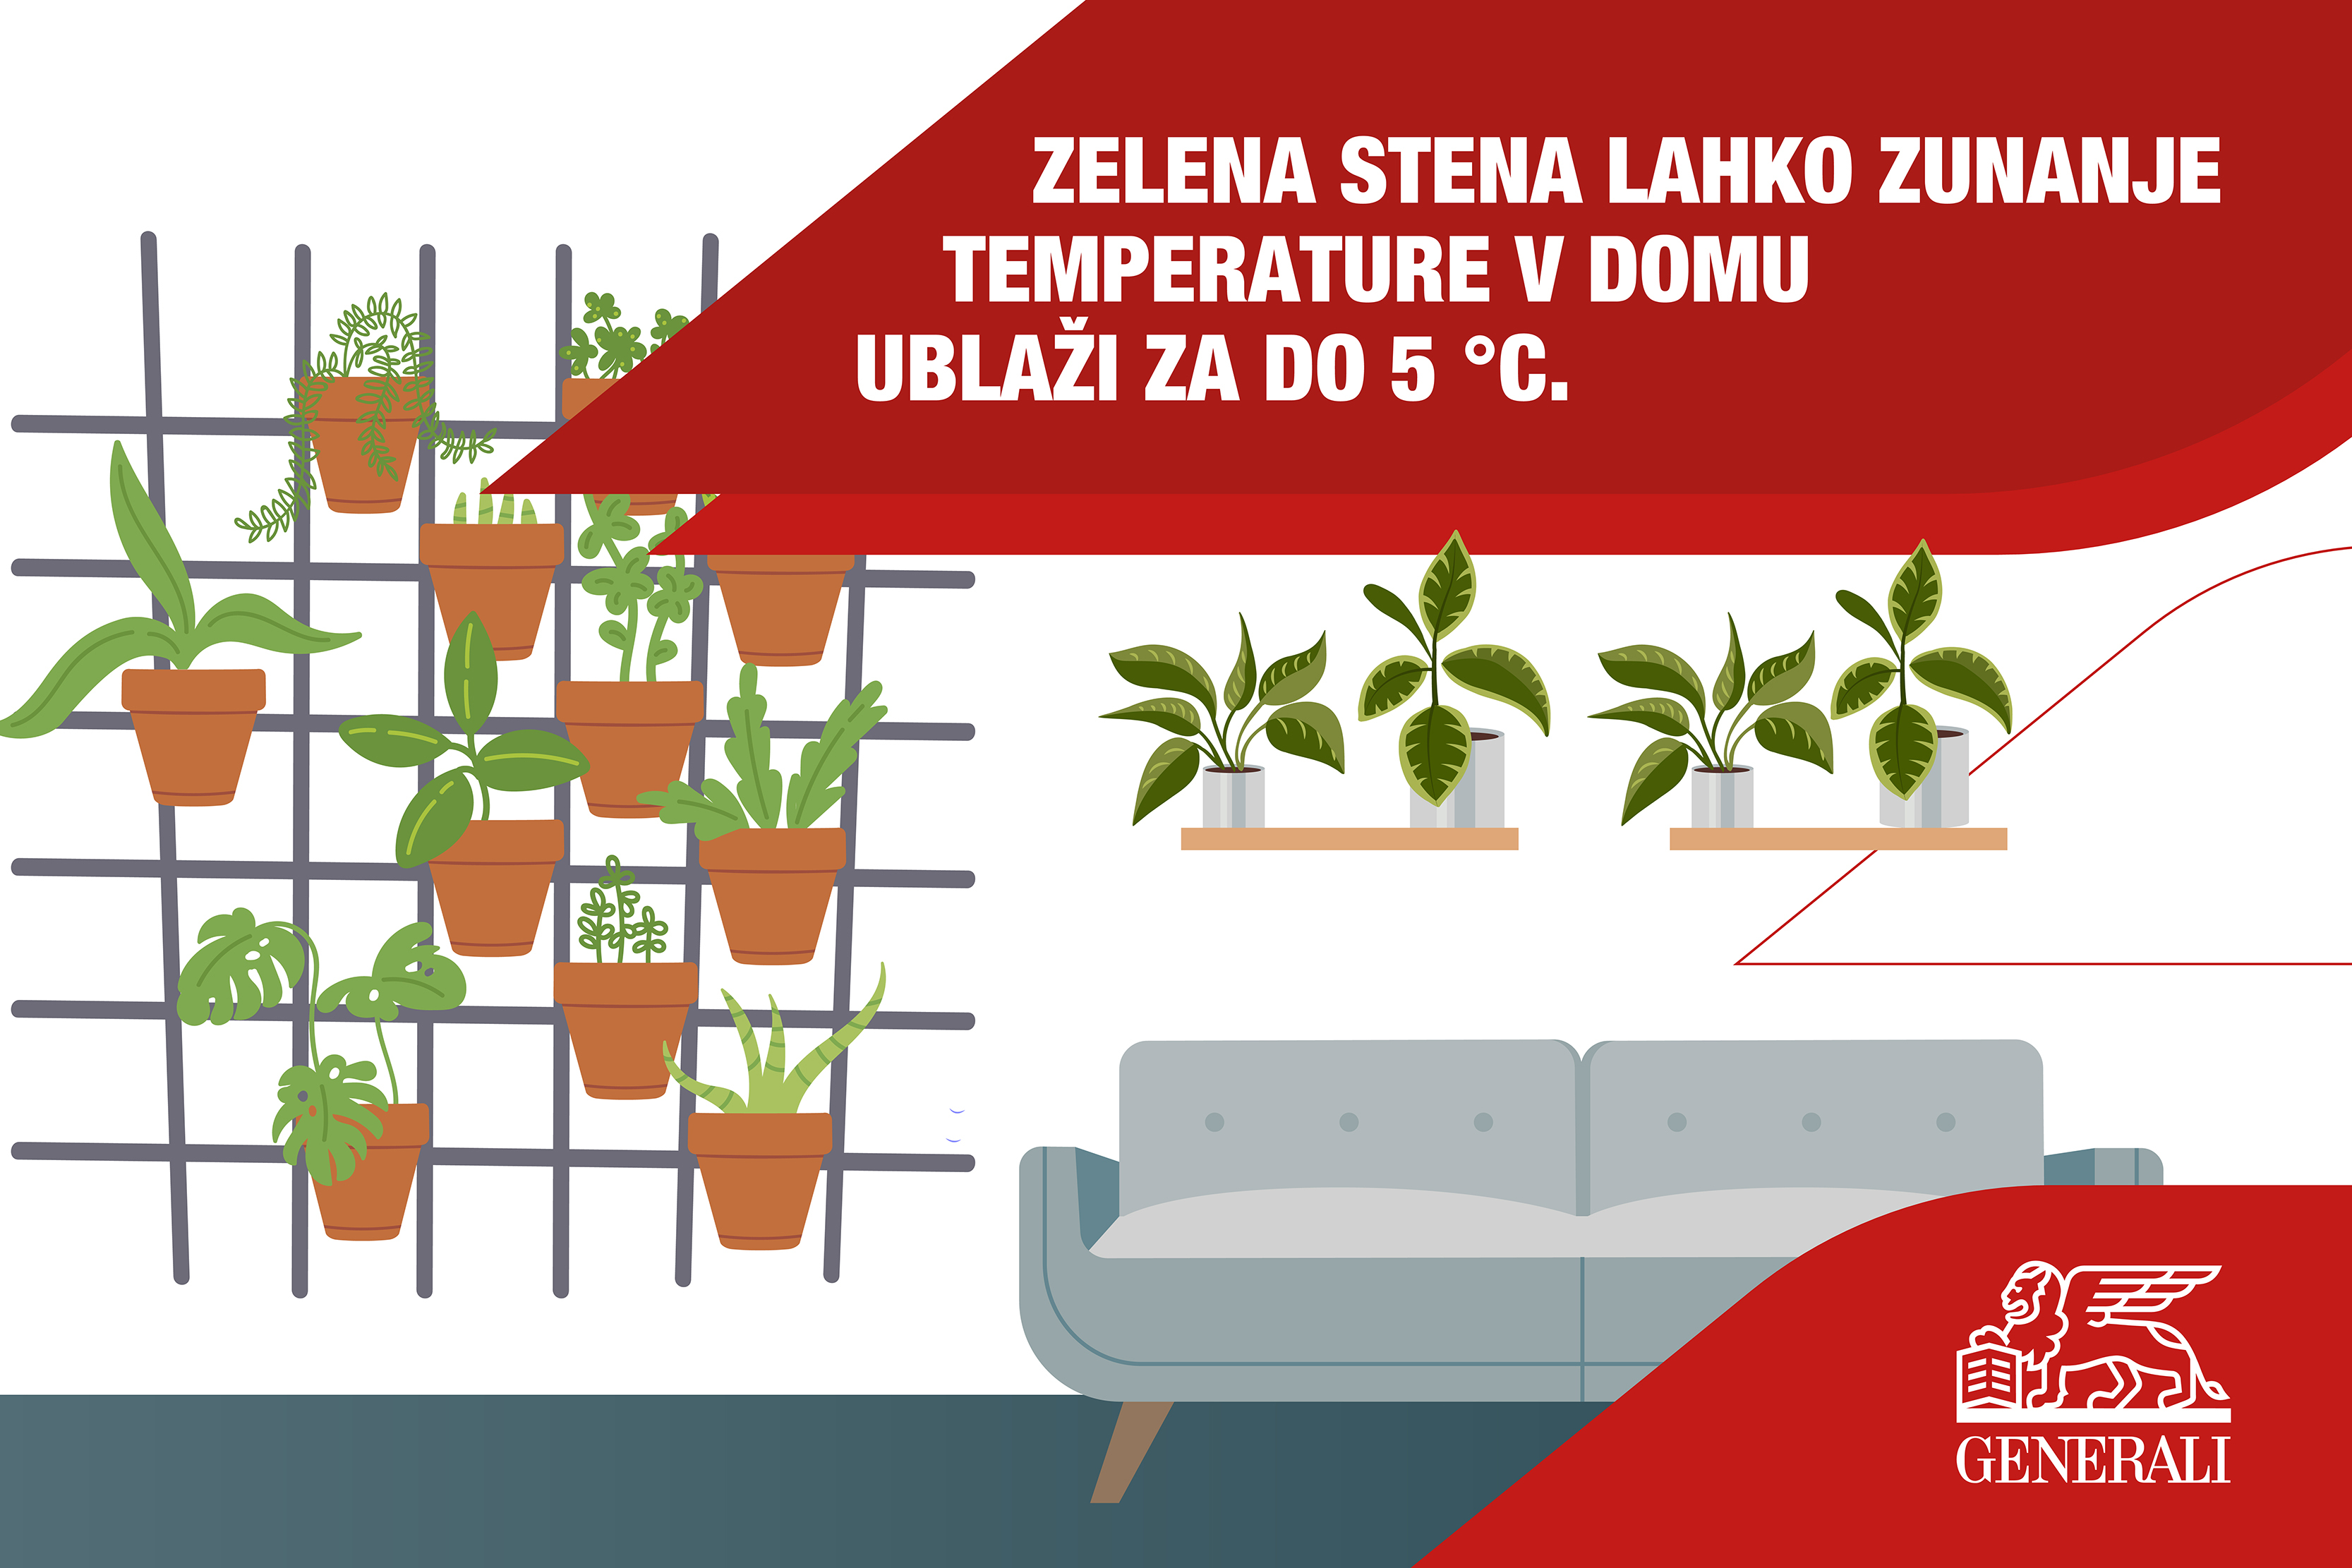 Zelena stena lahko zunanje temperature v domu ublaži za do 5 °C.